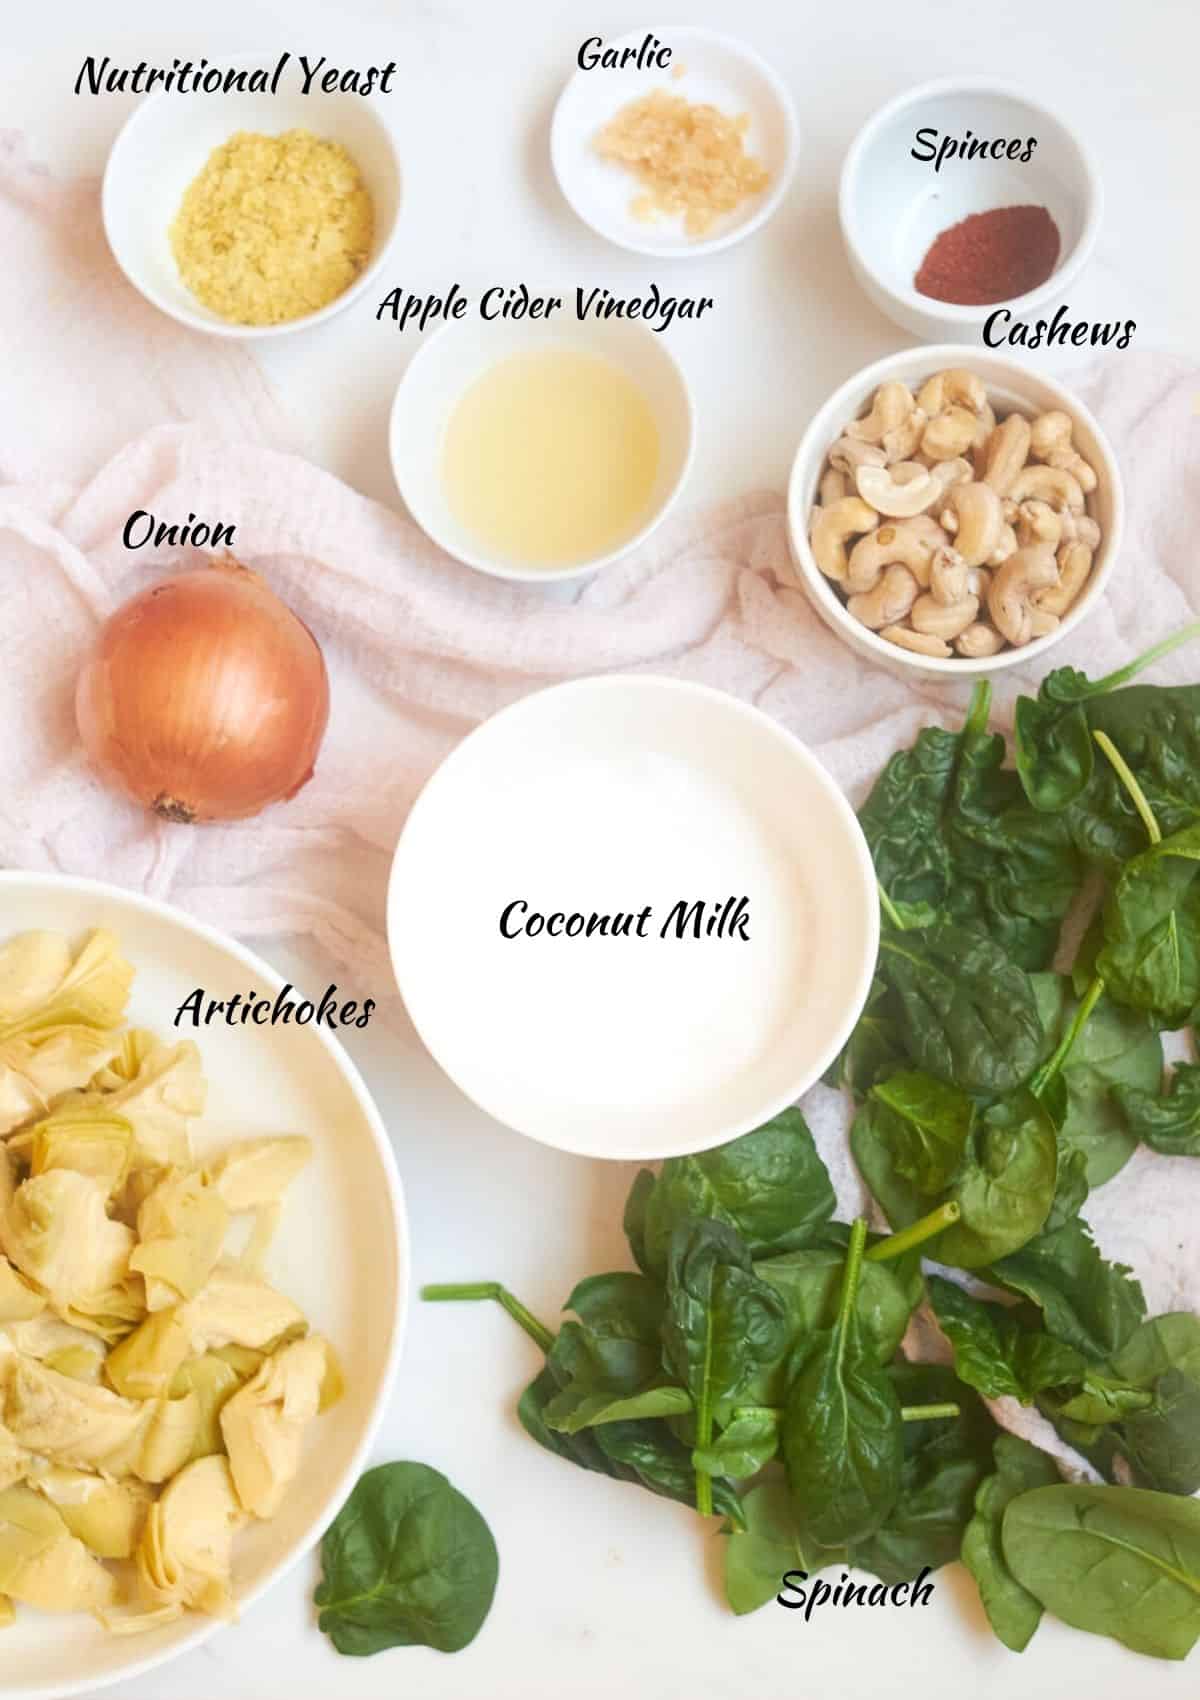 Nutritional yeast, garlic, spices, cashews, apple cider vinegar, onion, coconut milk, spinach, artichokes.